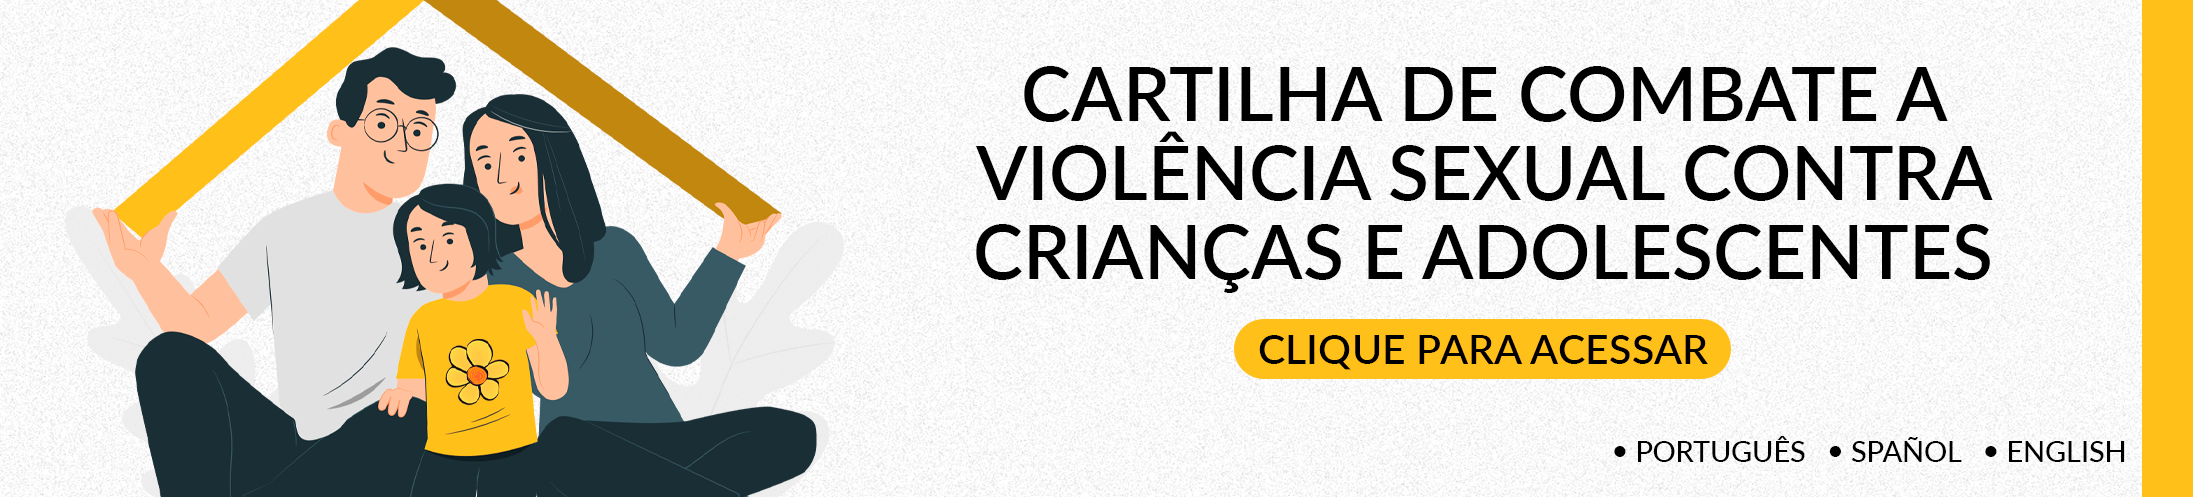 CARTILHA - 18 DE MAIO